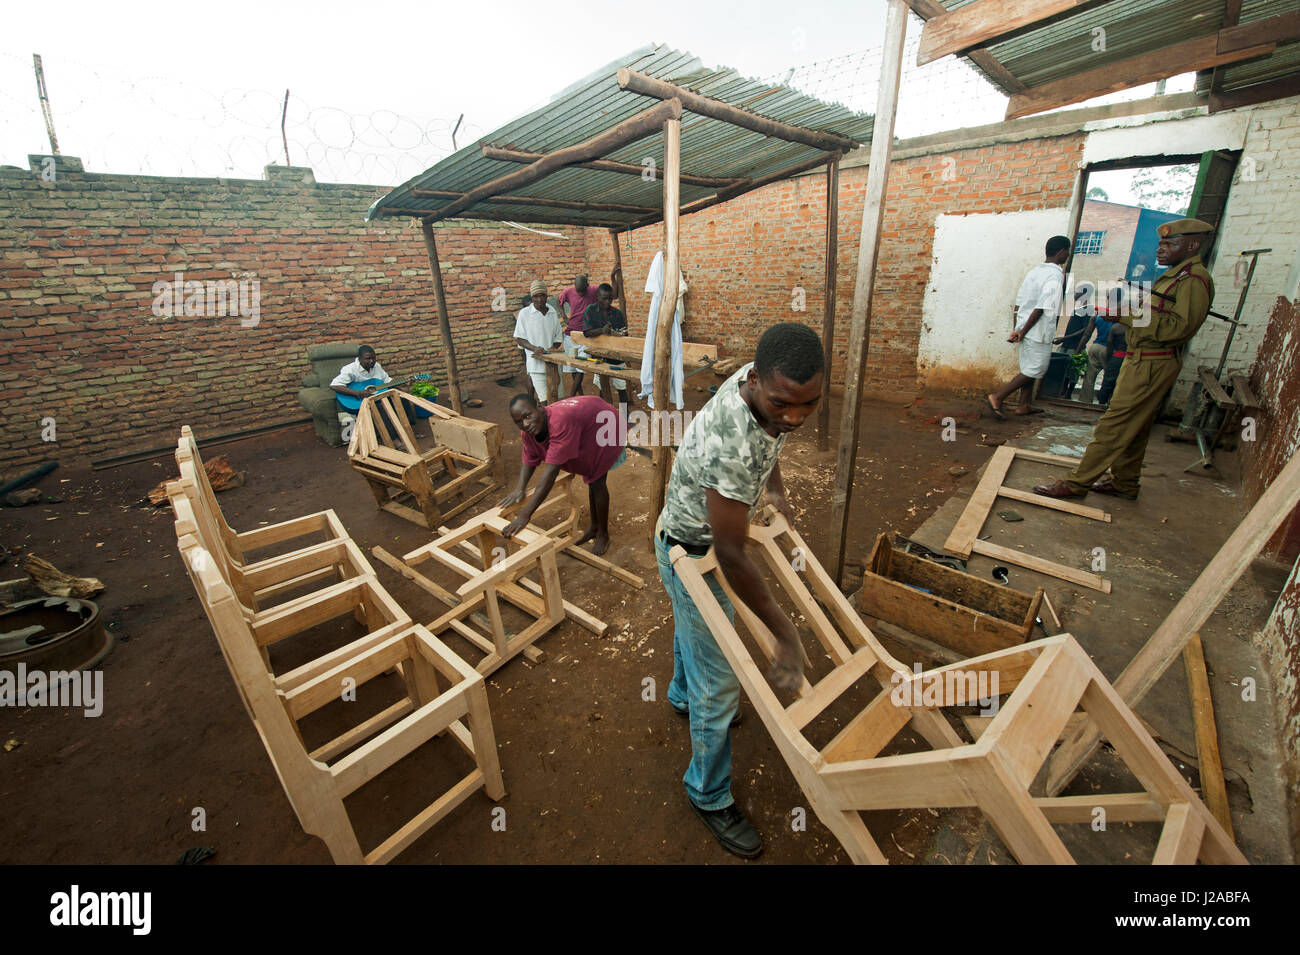 Malawi Bvumbwe, Centro de Rehabilitación de Jóvenes Delincuentes en el distrito de Thyolo, donde los delincuentes juveniles condenados y mantenerlo vivo. Carpintería la capacitación es parte de la rehabilitación. Una vez liberados, carecen de herramientas para continuar con la carpintería en casa. Foto de stock